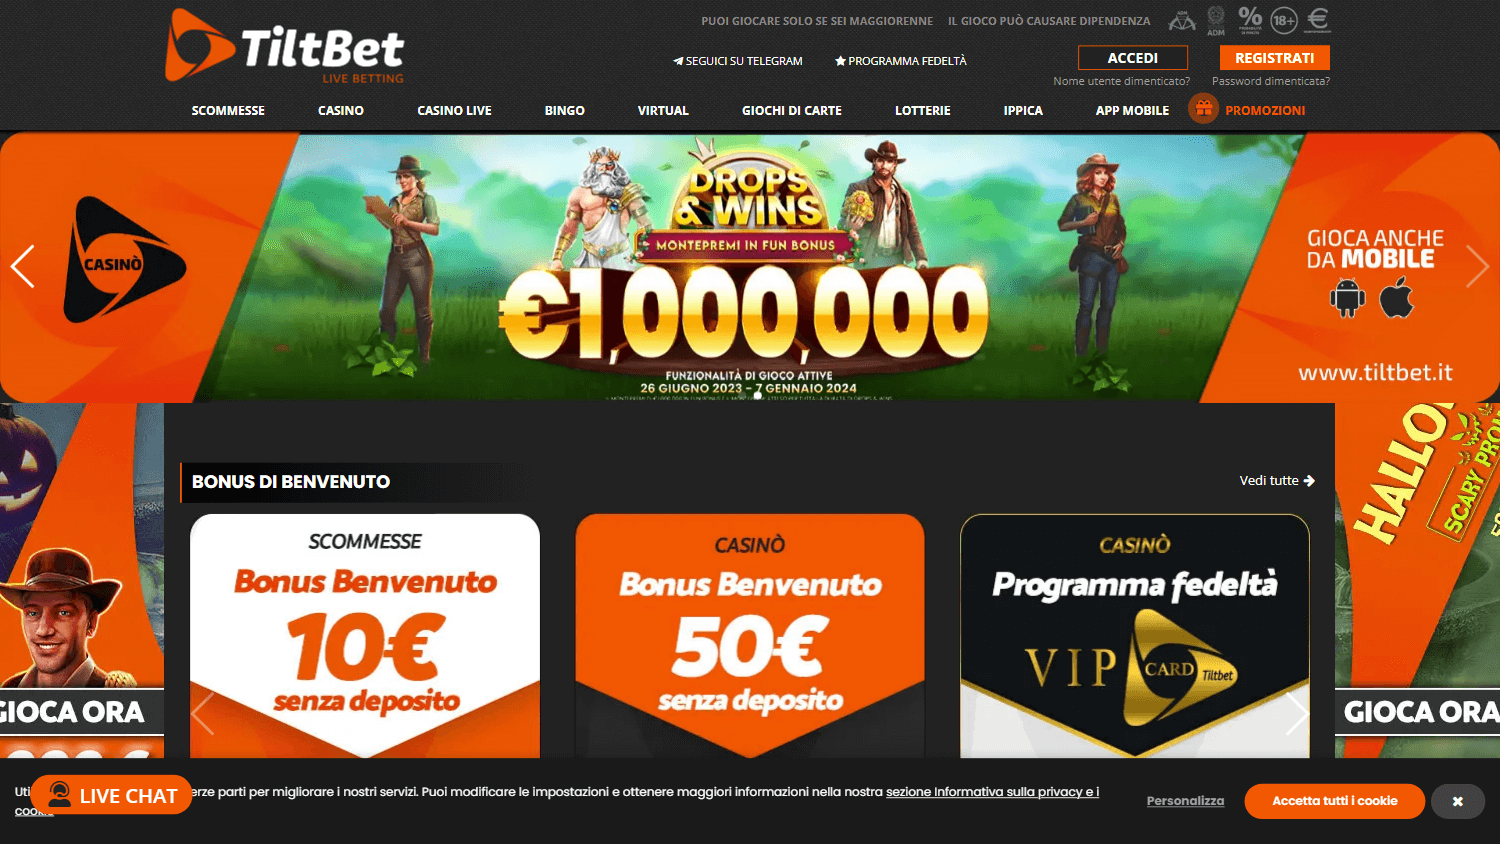 tiltbet_casino_homepage_desktop